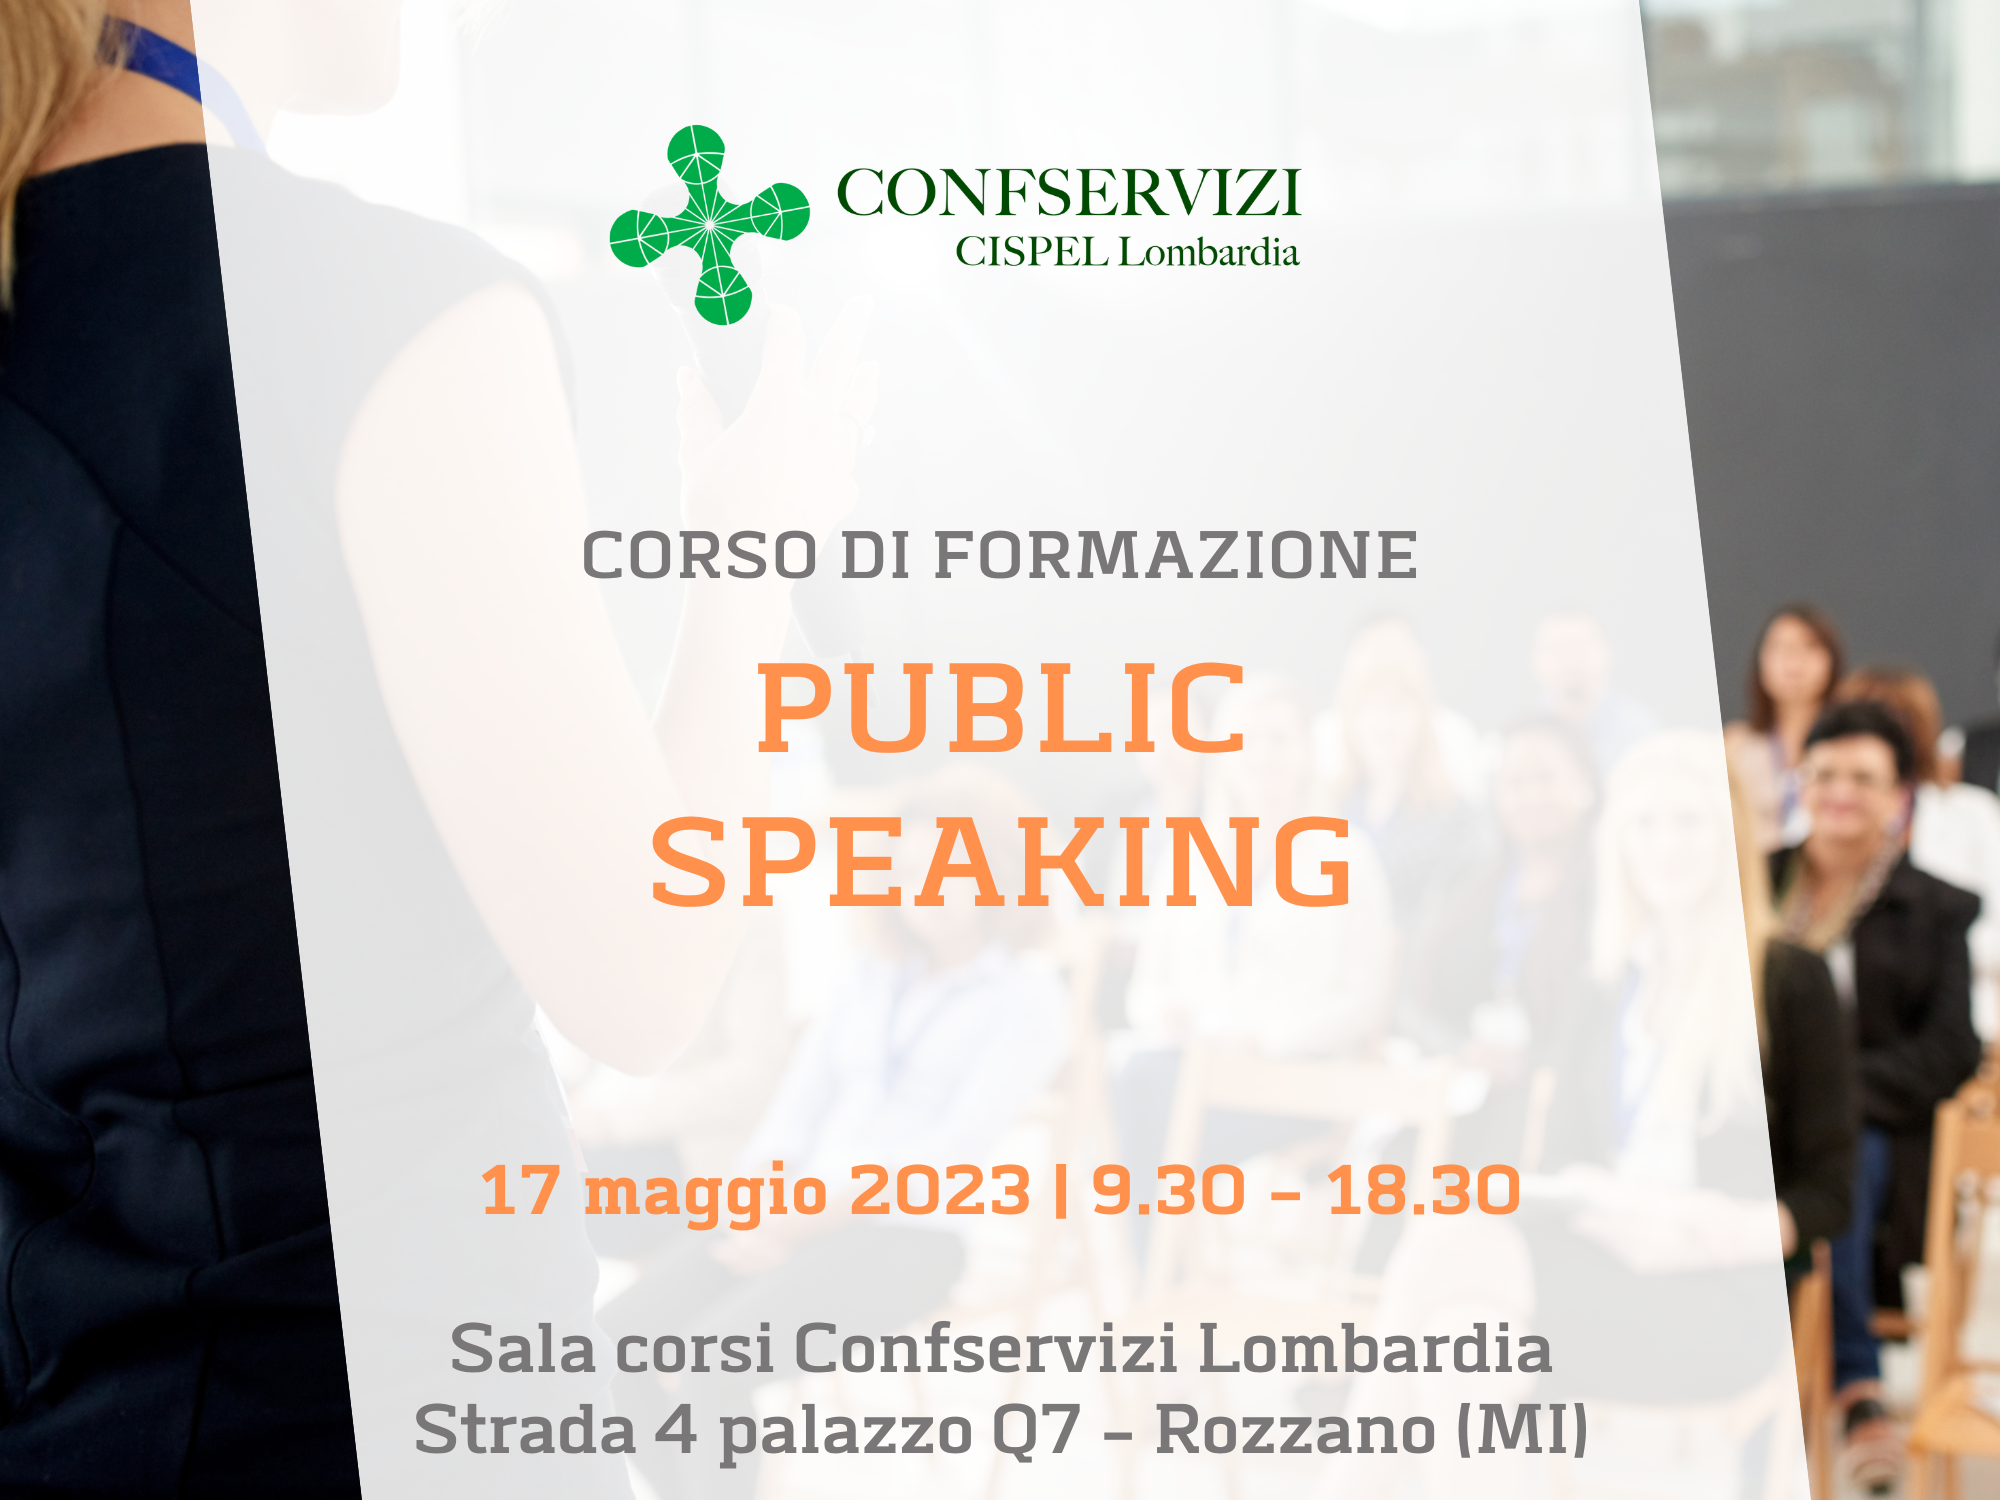 Corso Public Speaking